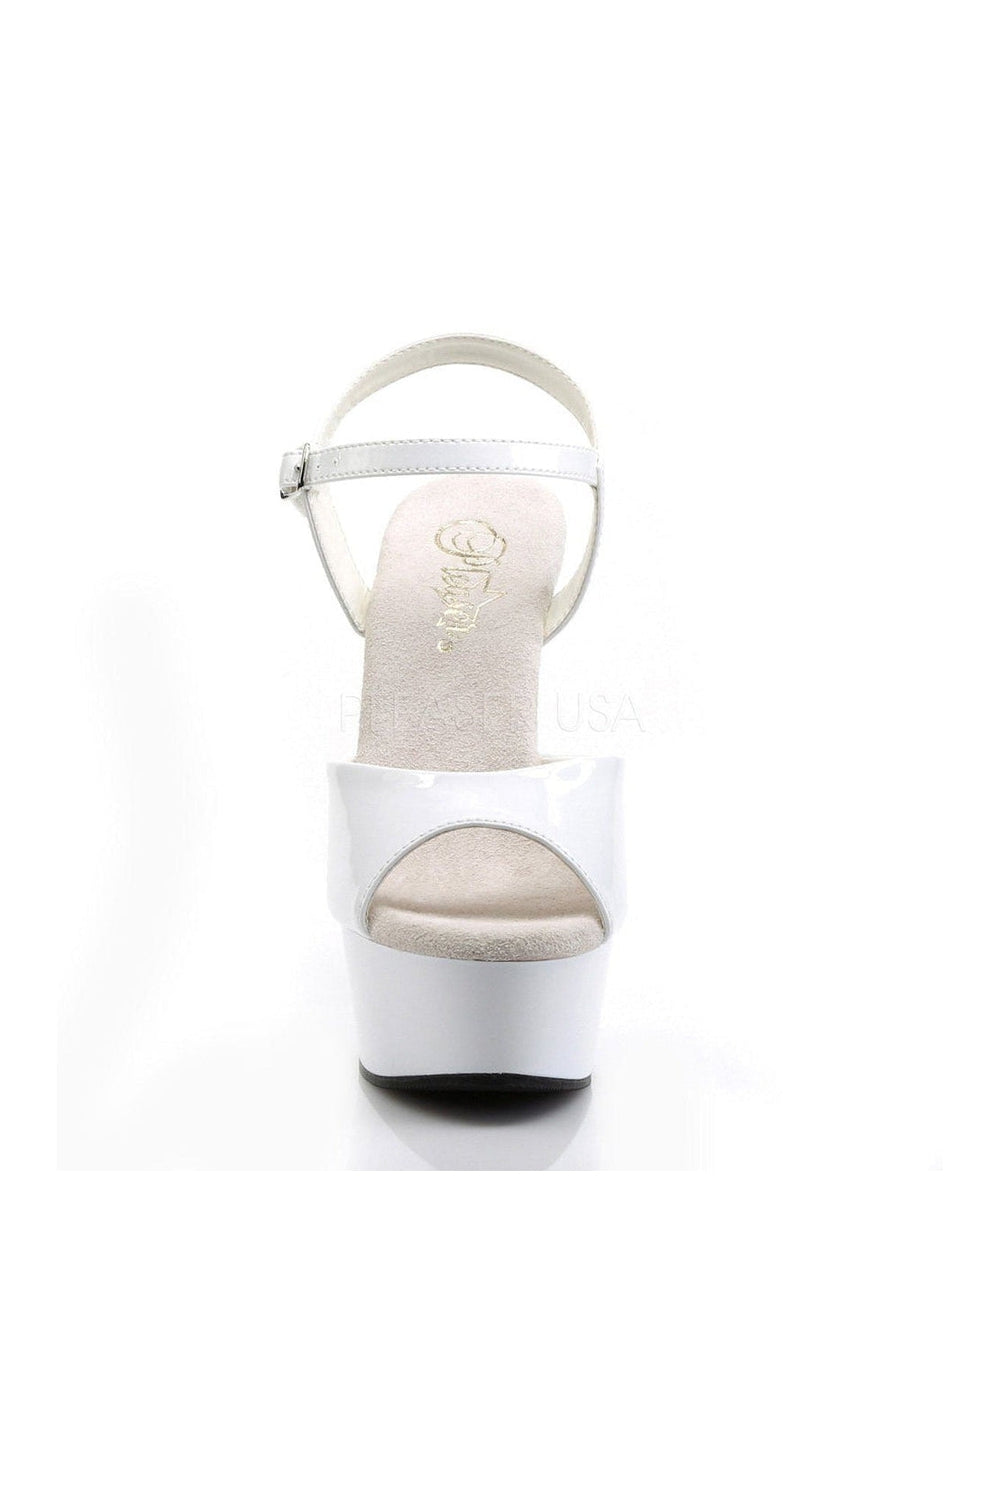 DELIGHT-609 Platform Sandal | White Patent-Pleaser-Sandals-SEXYSHOES.COM